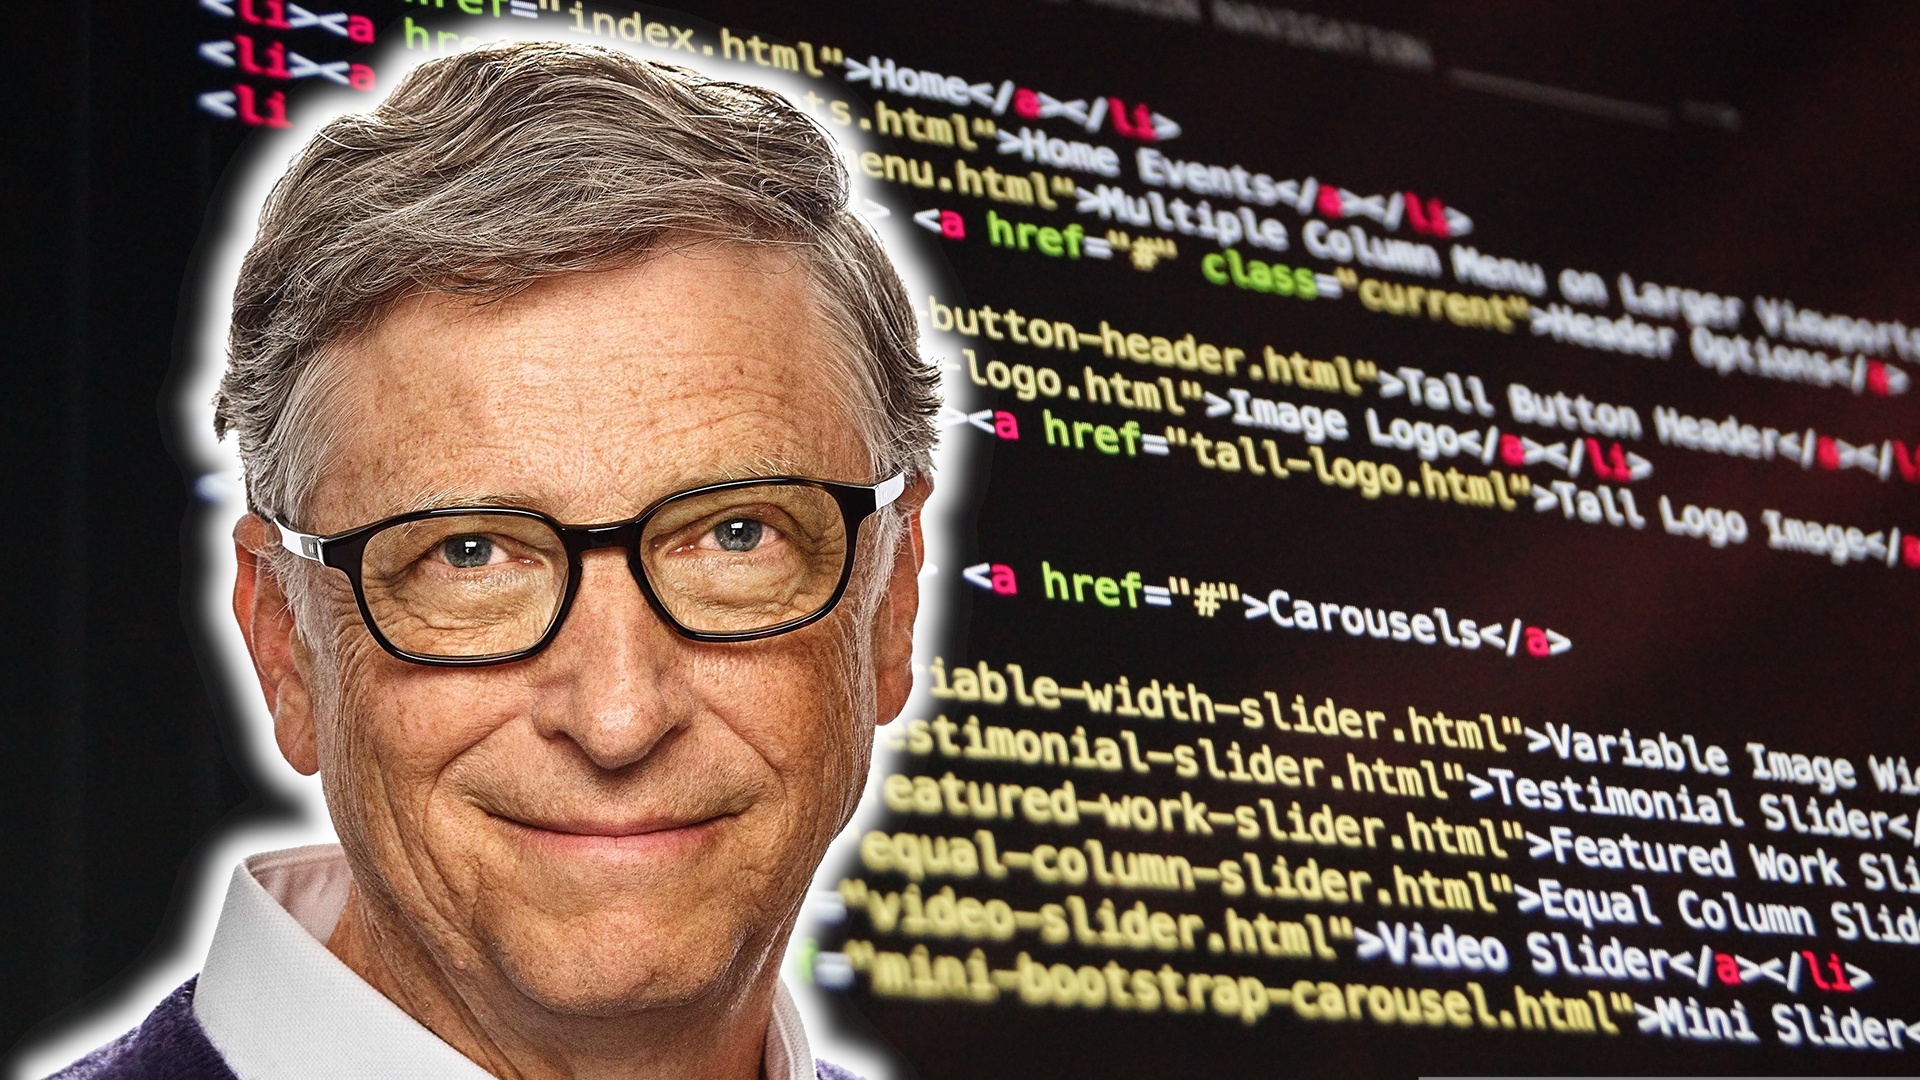 Bill Gates hat in einer einzigen Nacht ein Spiel entwickelt, um einen hochdotierten Vertrag abzuschließen - es gilt als besonders schlecht